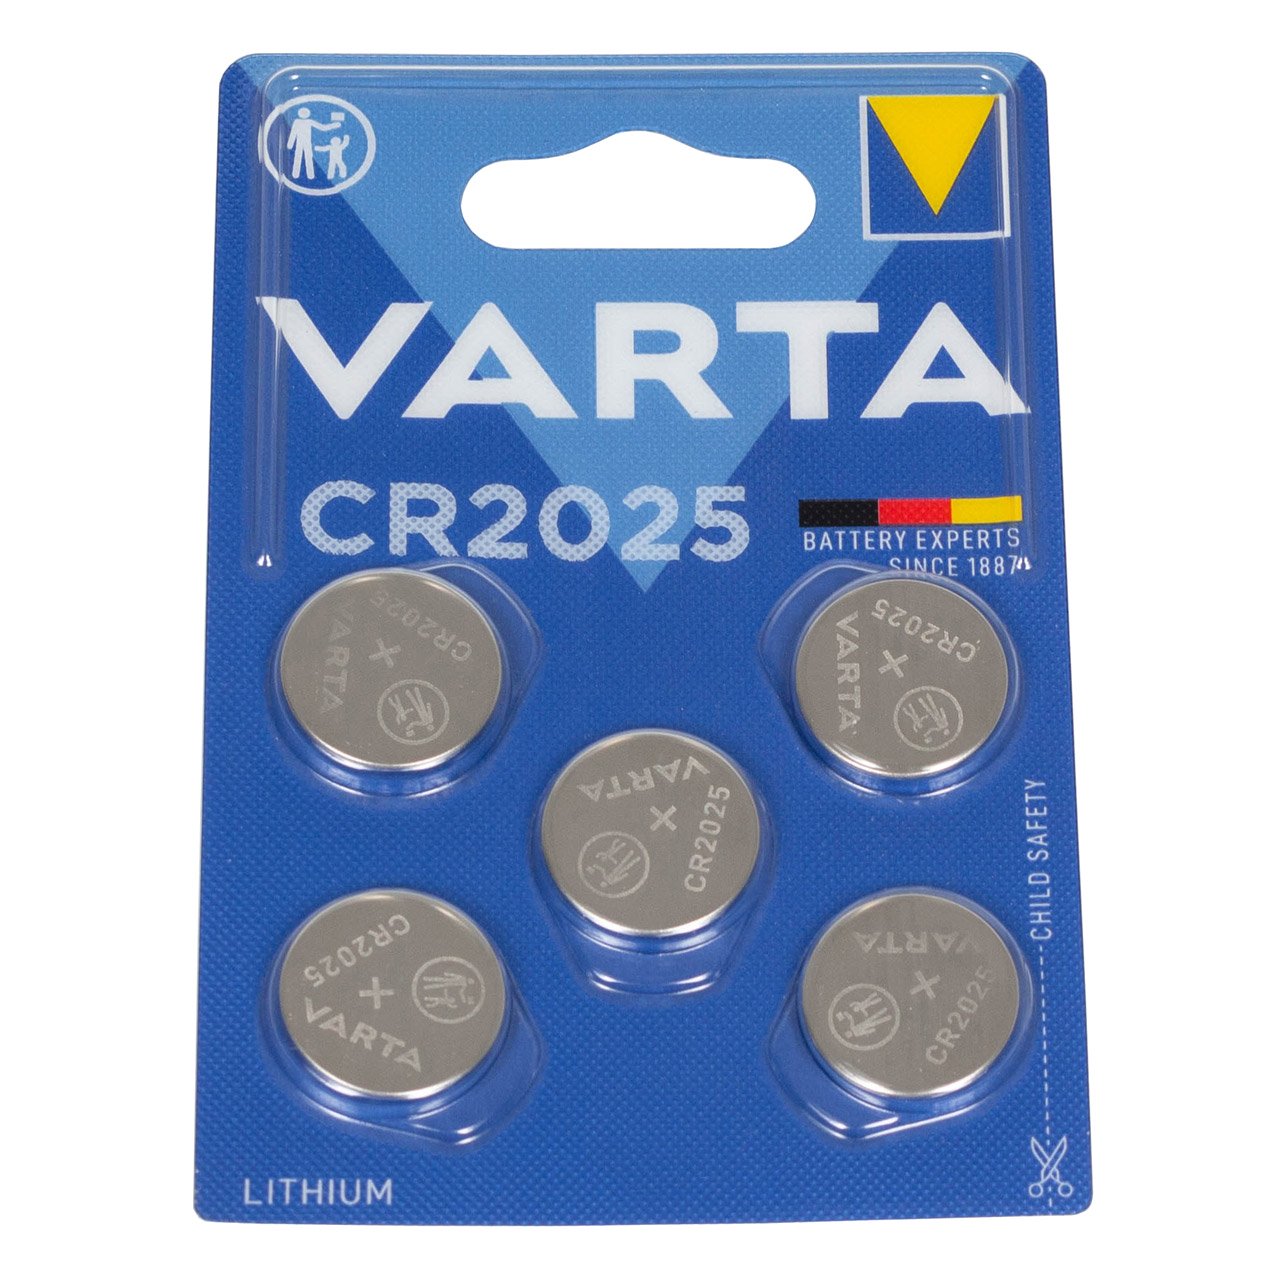 50x VARTA Lithium 3V CR2025 Knopfzelle Knopfbatterie Batterie (MHD 09.2033)